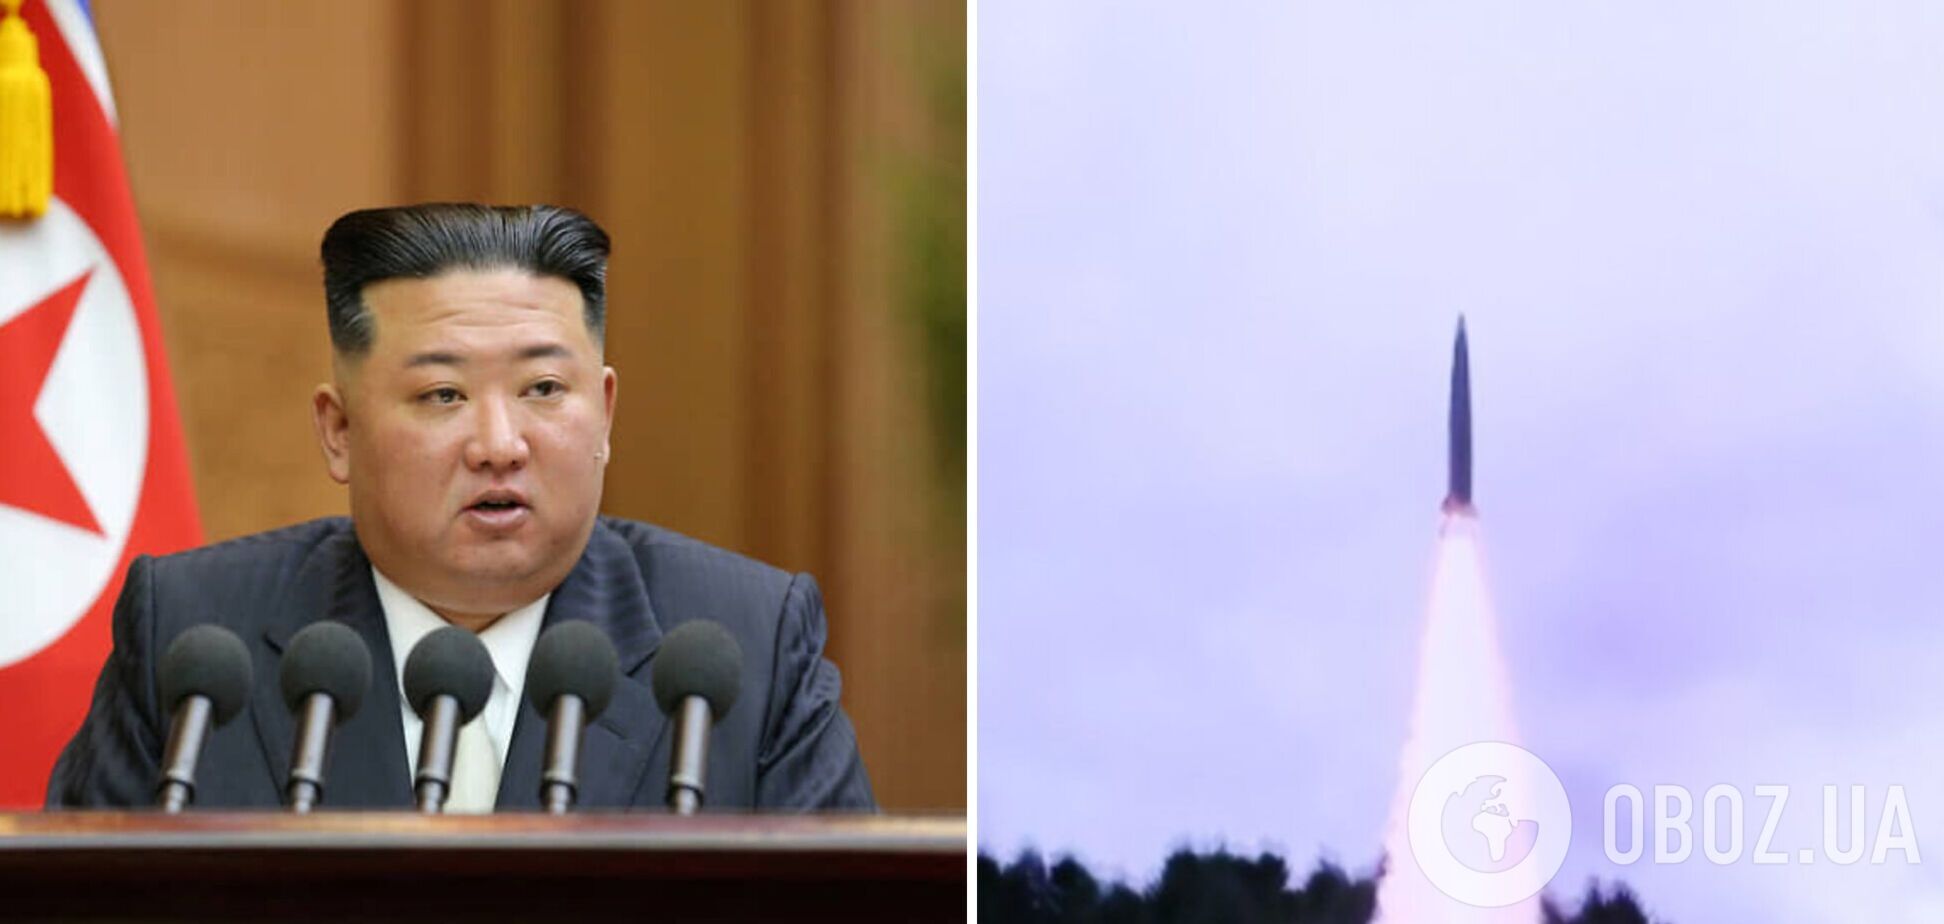 КНДР снова осуществила запуск баллистических ракет в сторону Японского моря